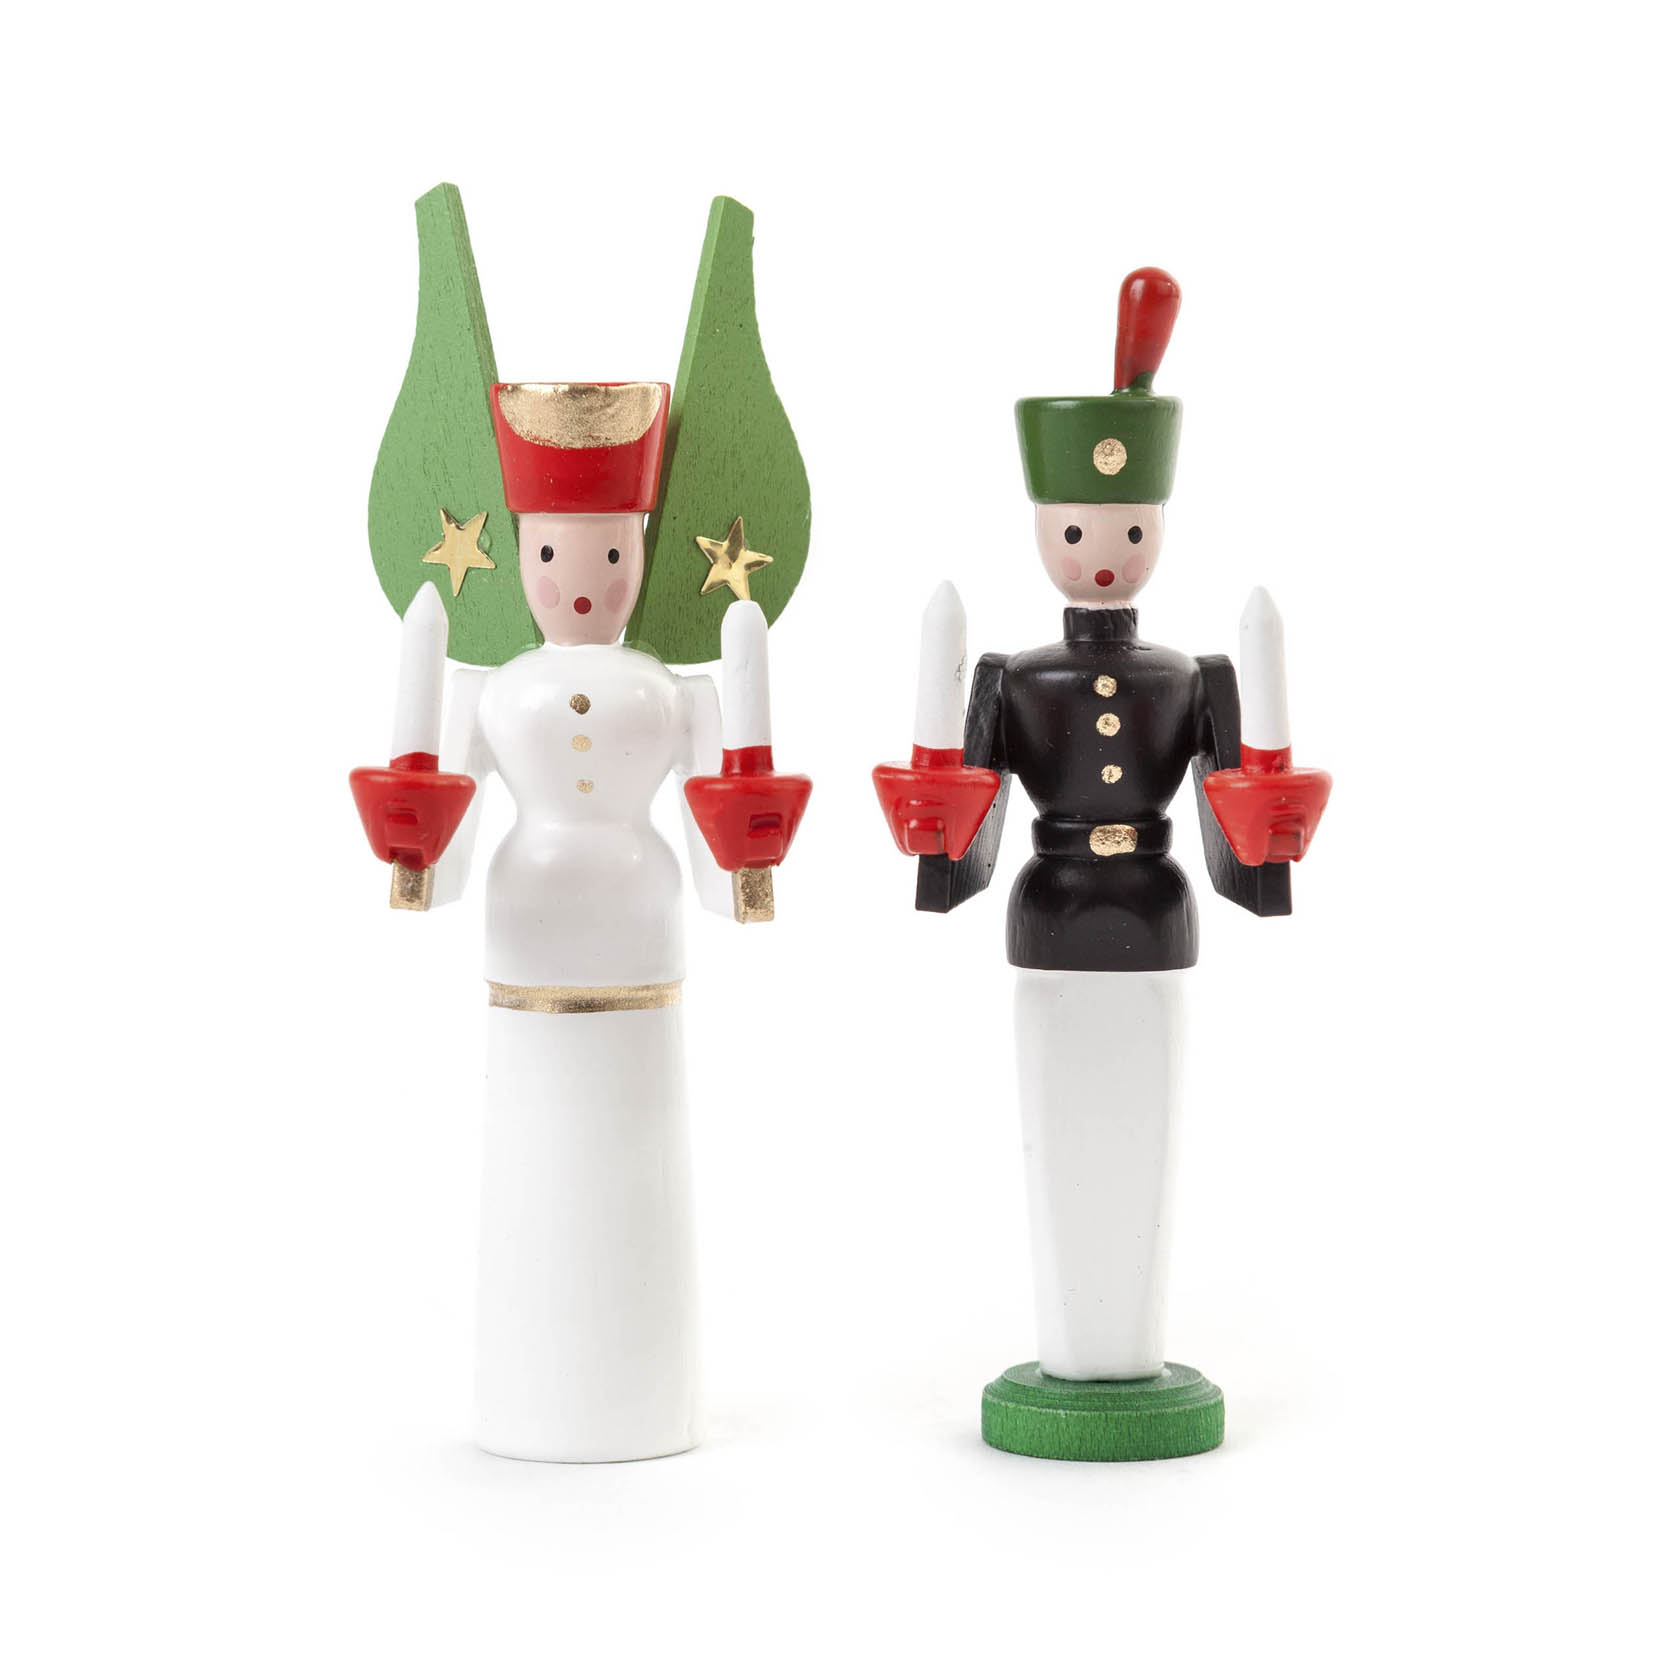 Miniatur Engel und Bergmann im Dregeno Online Shop günstig kaufen